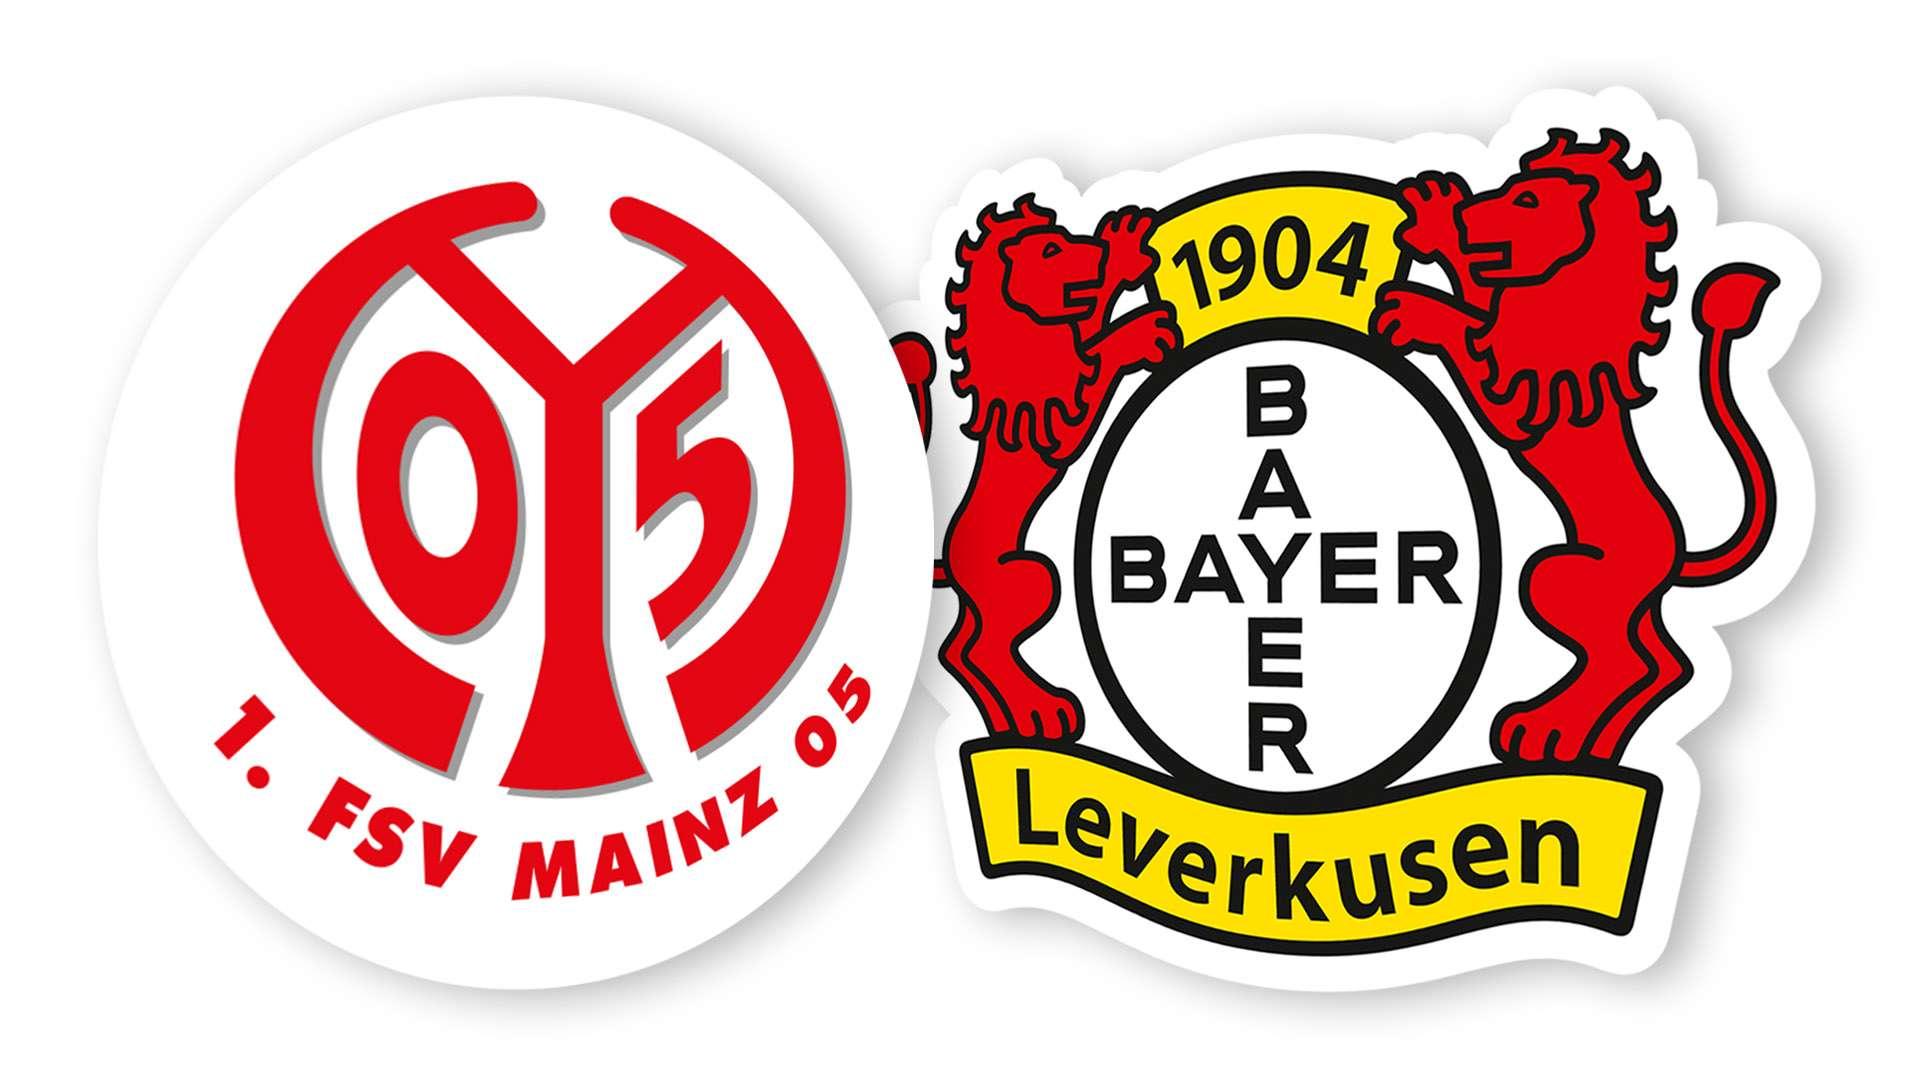 FSV Mainz 05 away tickets